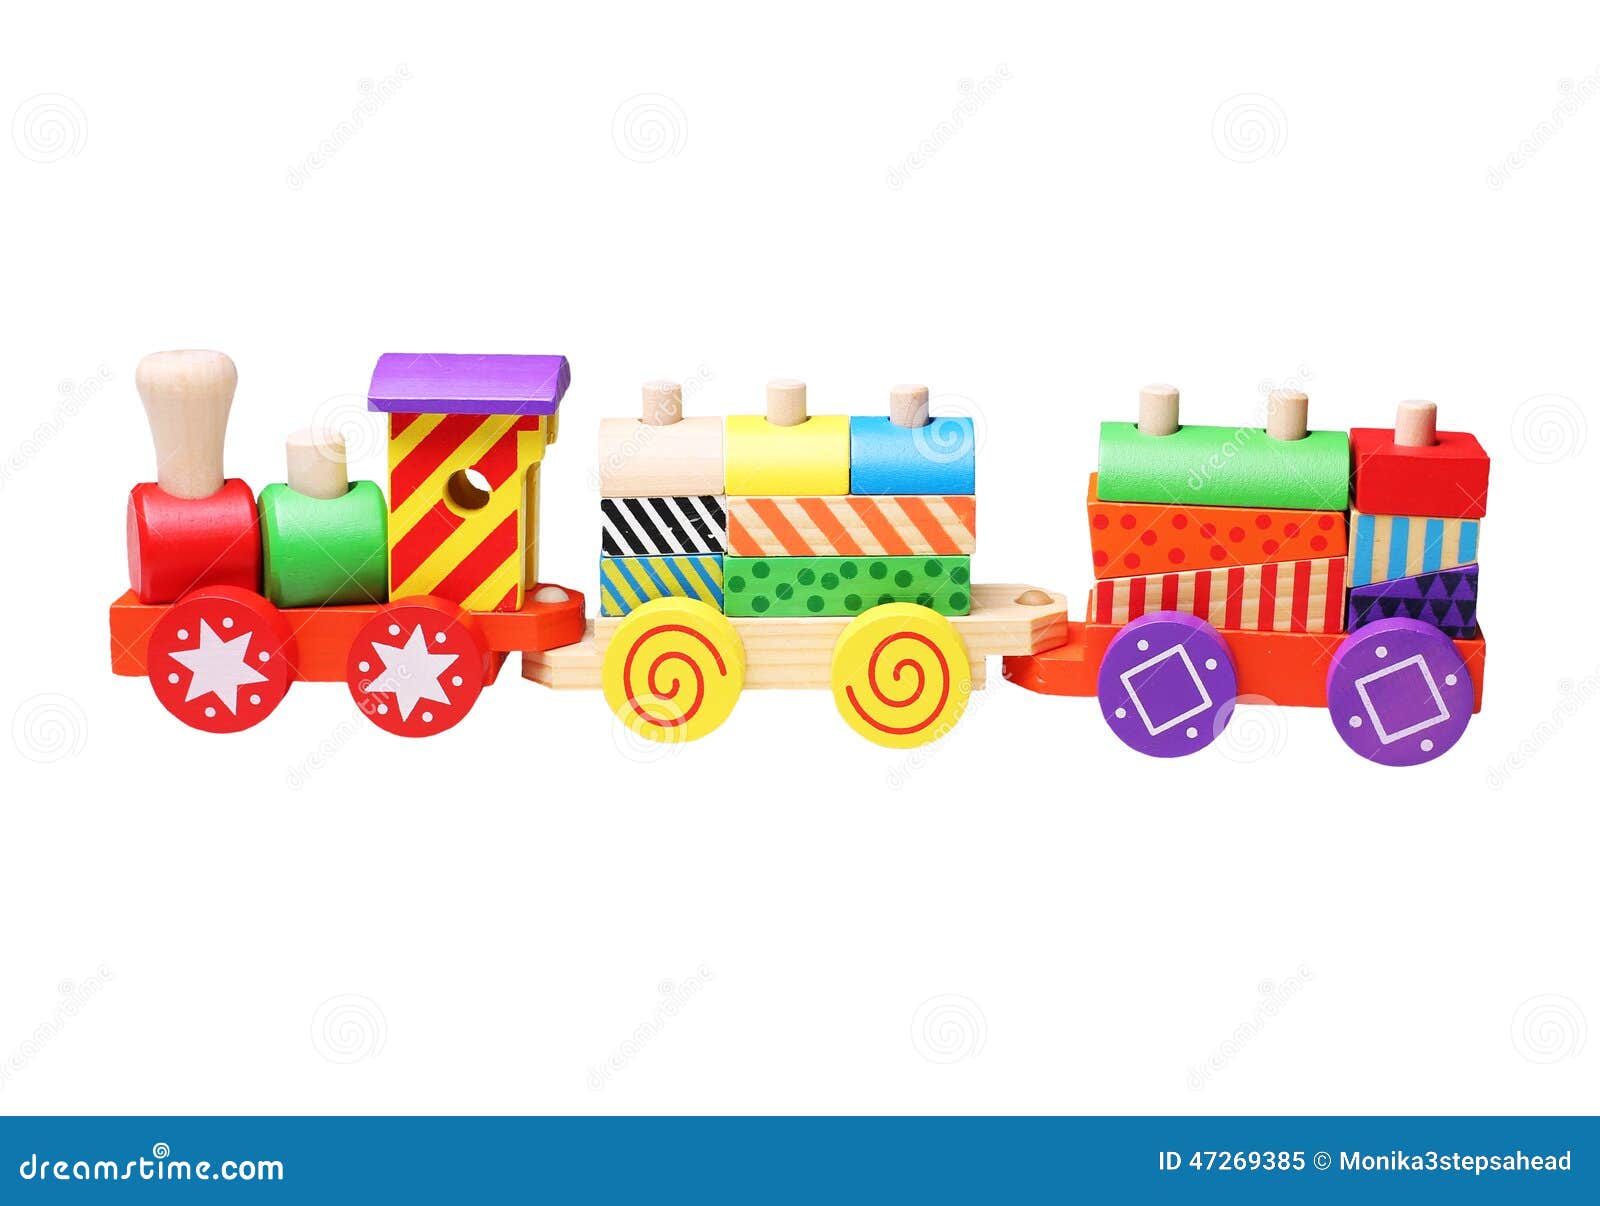 wooden toy train for children